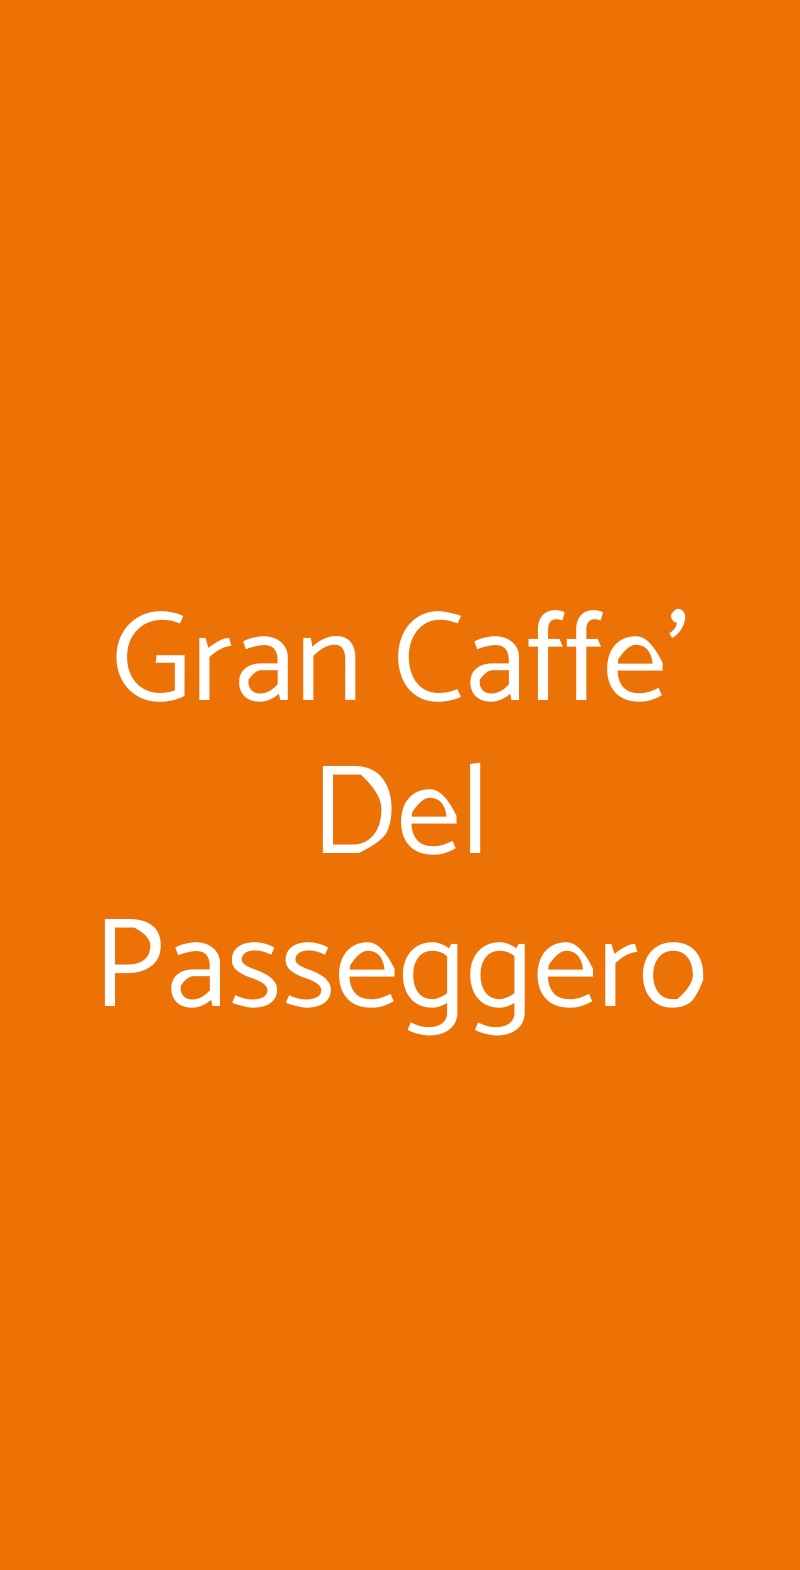 Gran Caffe' Del Passeggero Roma menù 1 pagina